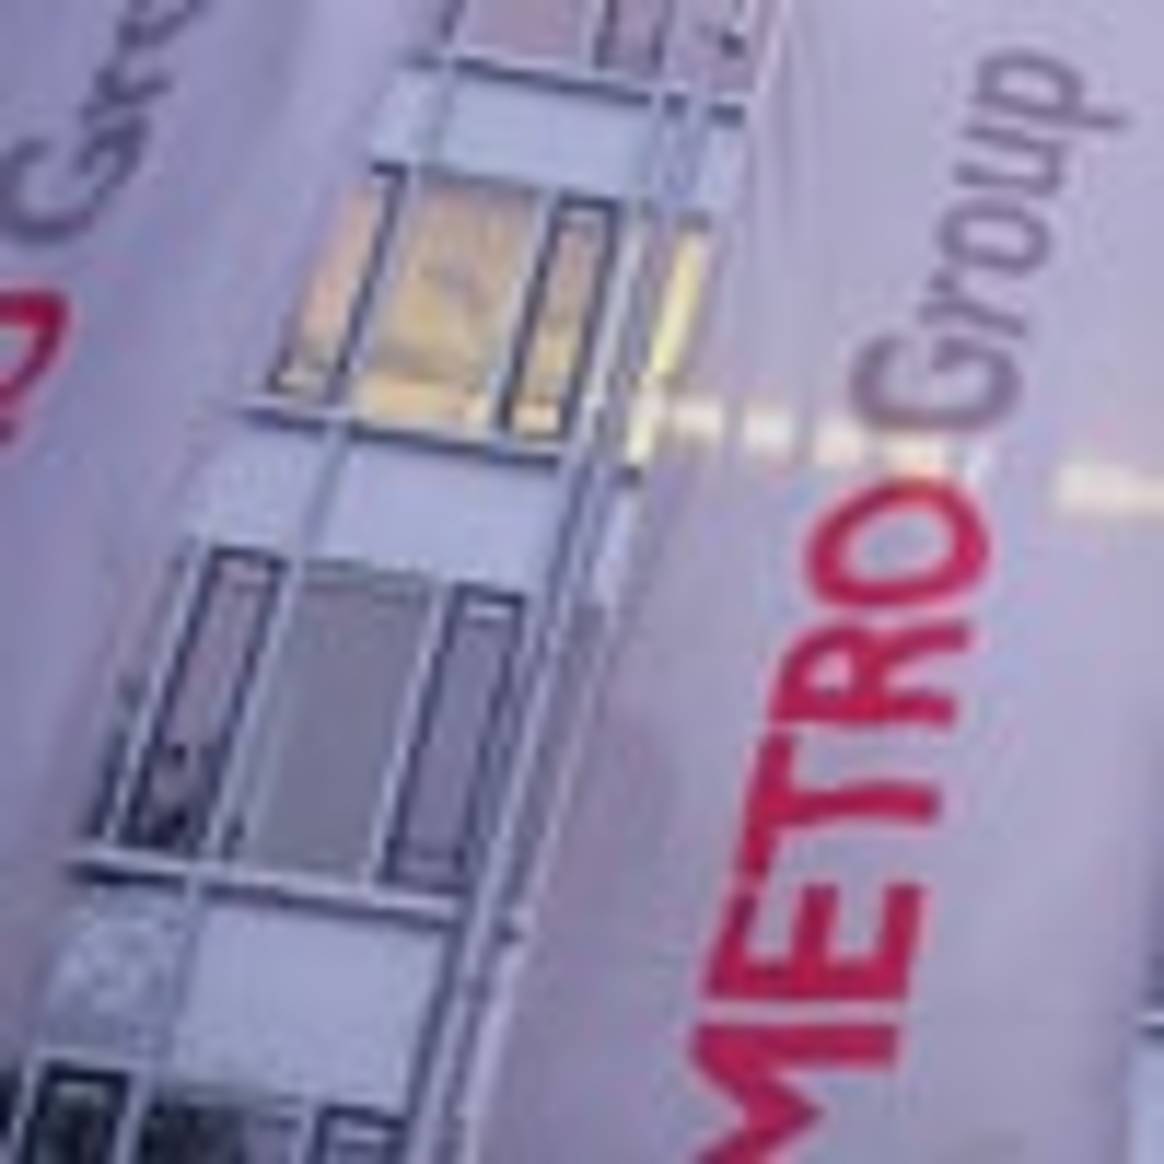 Metro: Expansionskurs bleibt erfolgreich